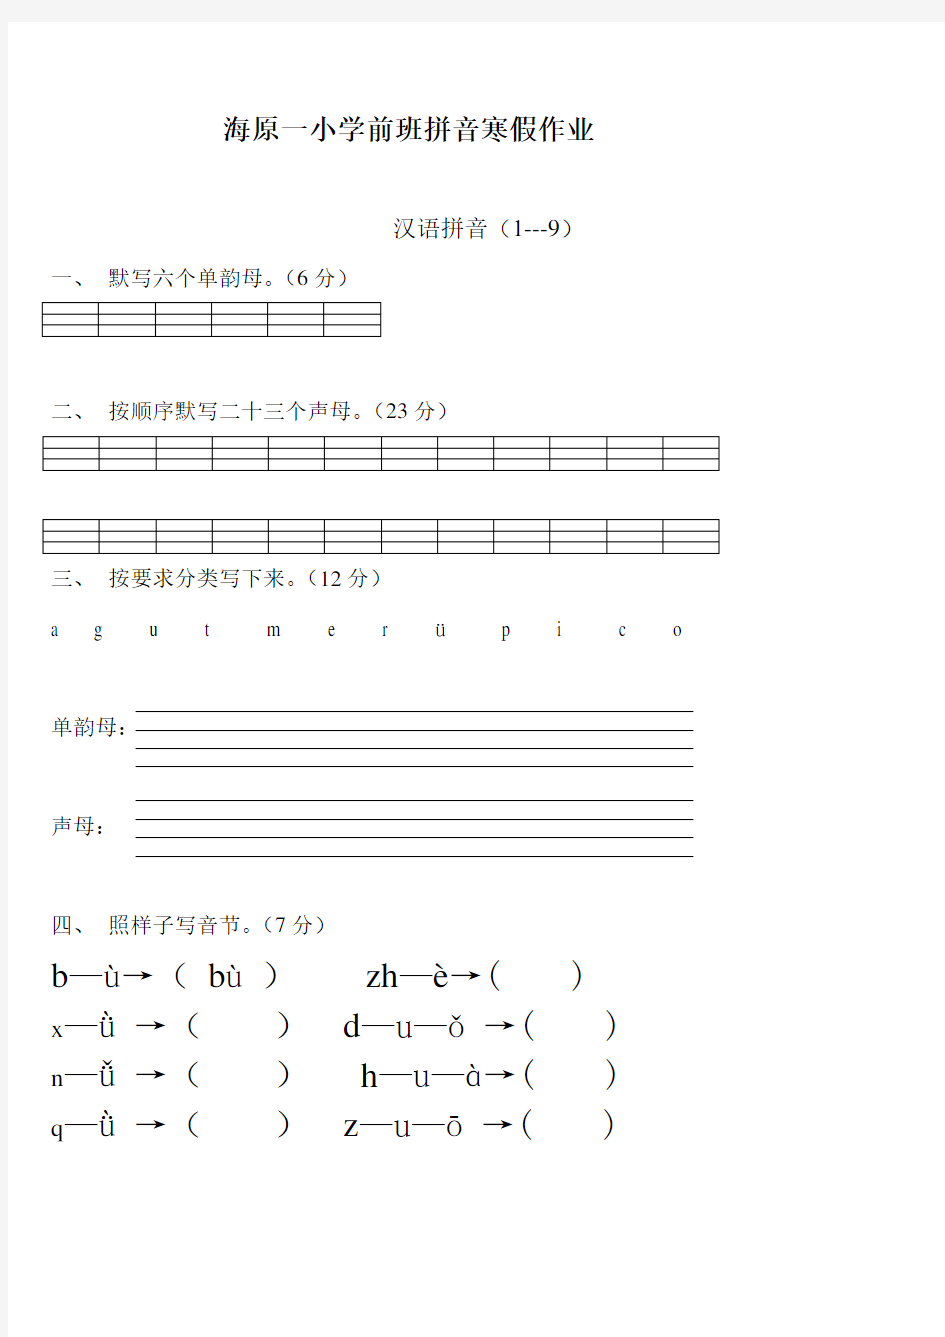 (完整版)学前班语文上册汉语拼音练习题